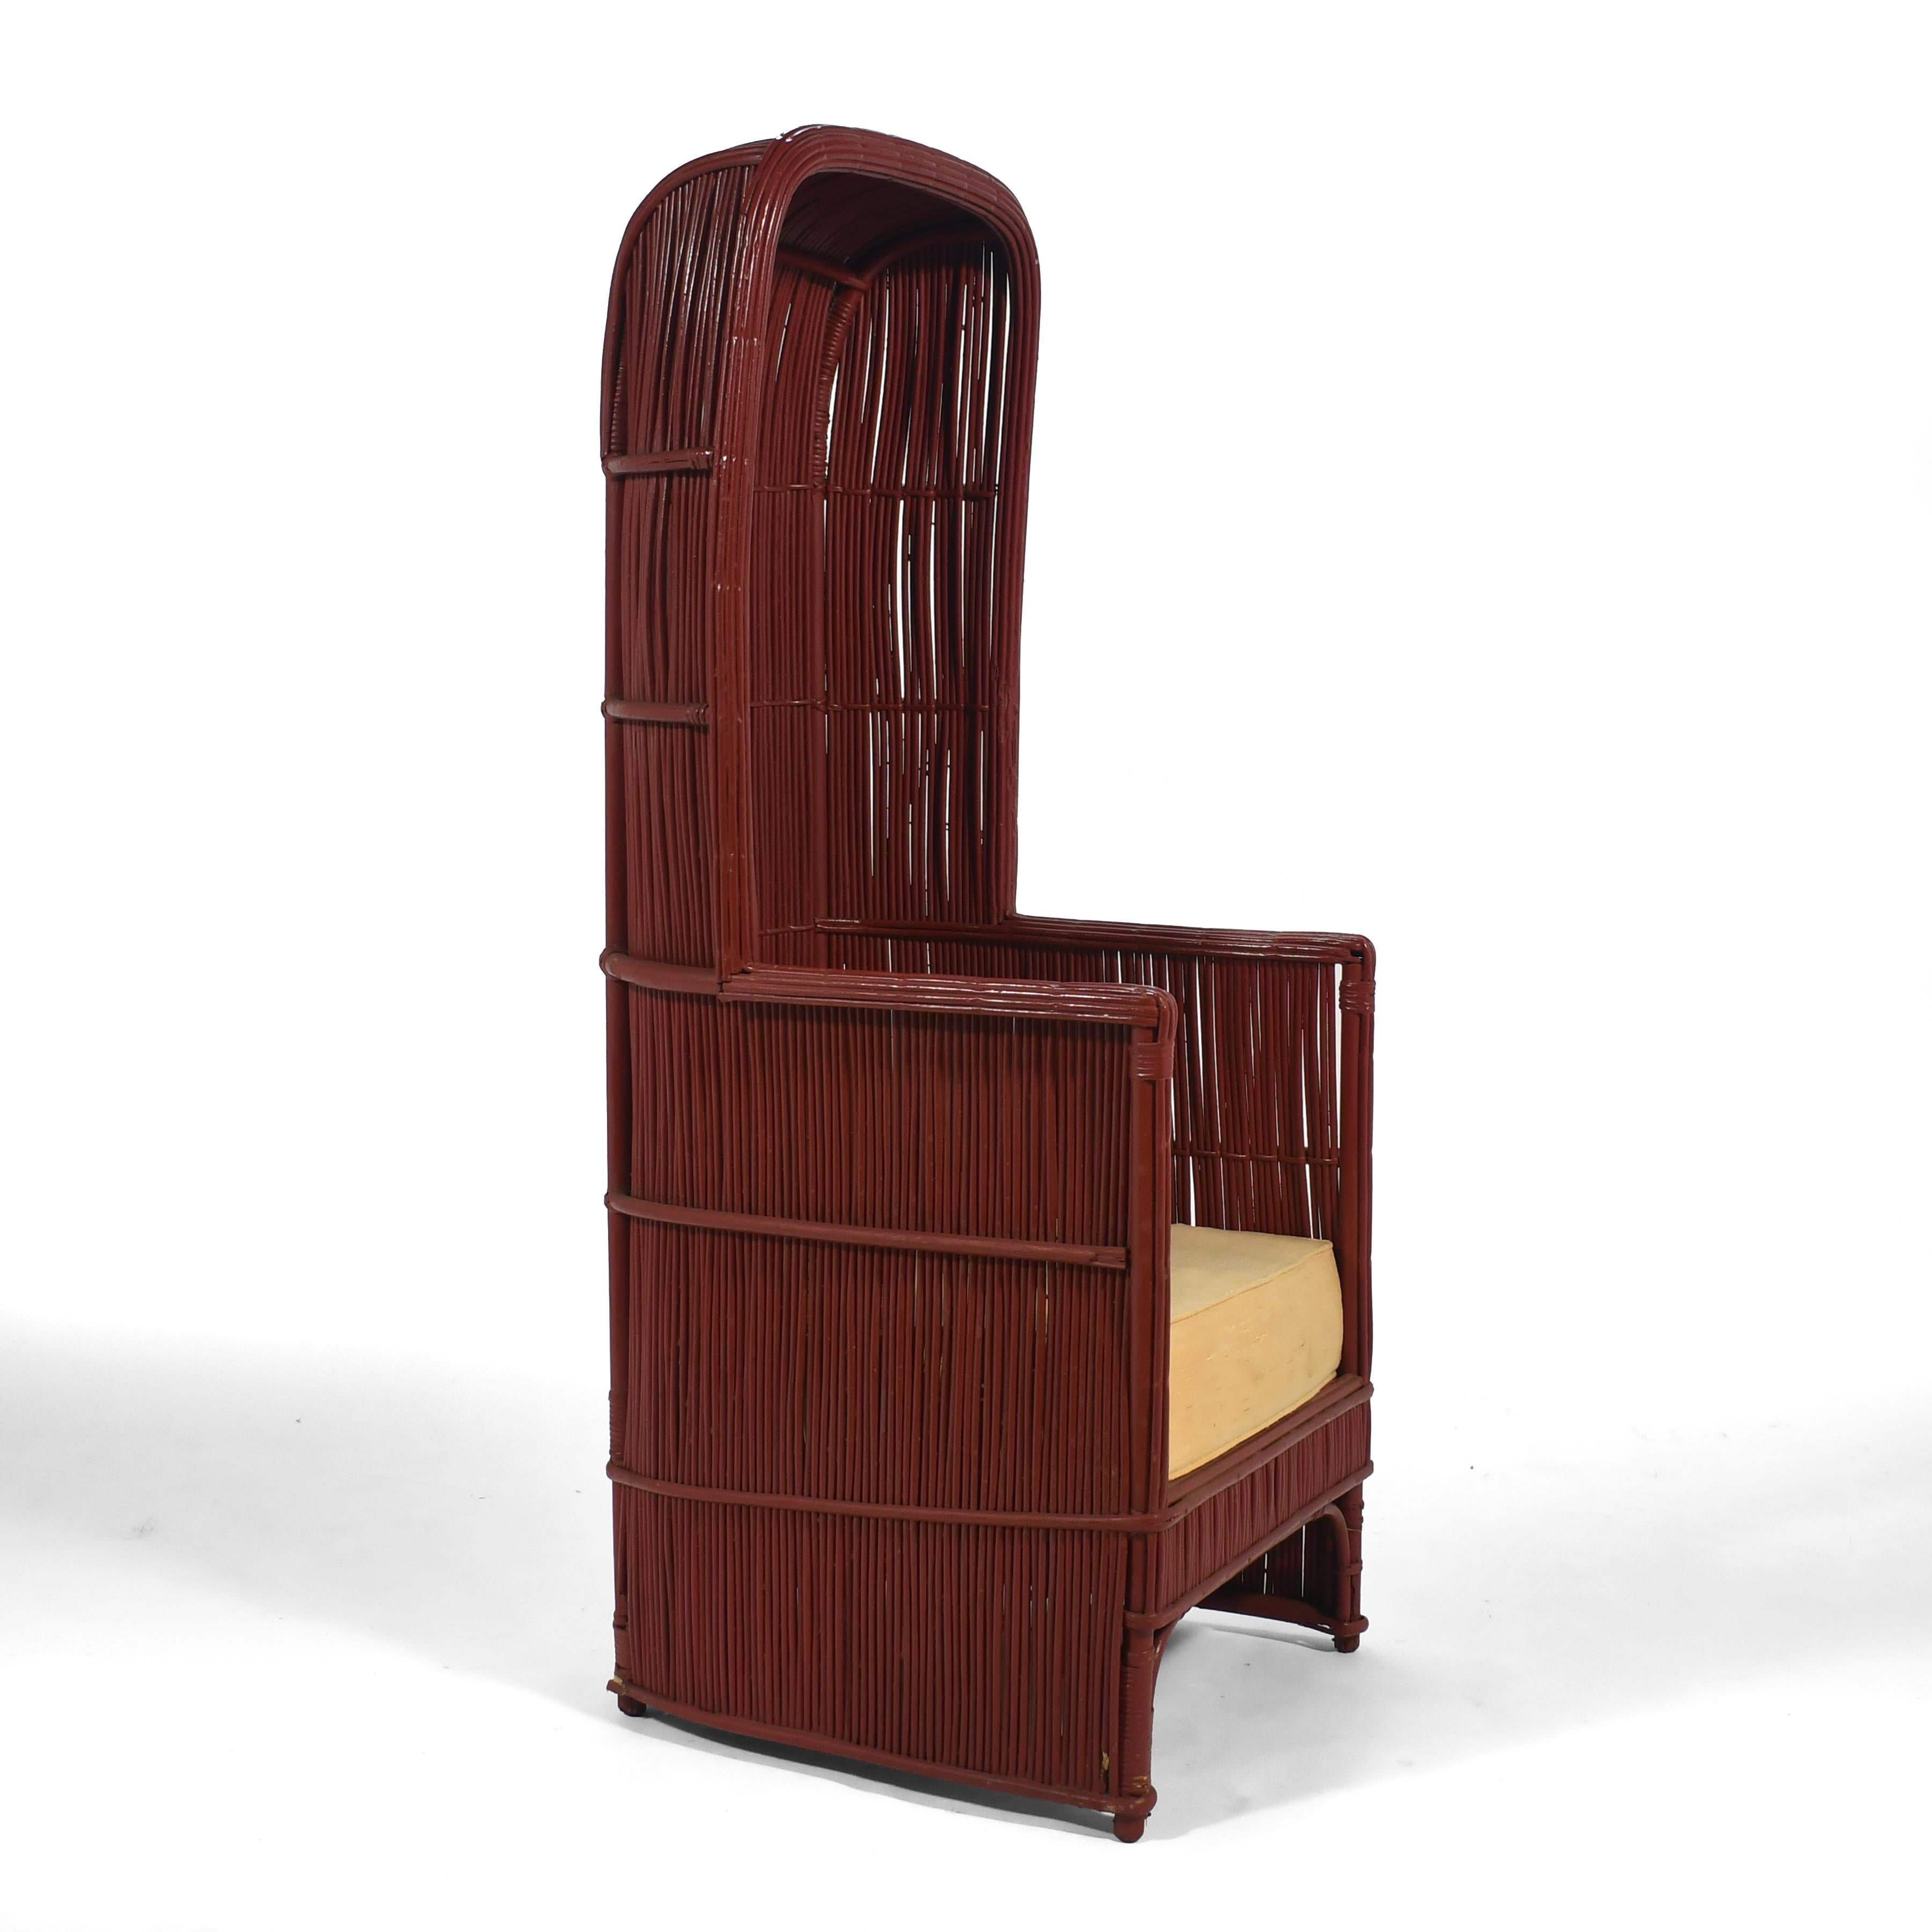 Un remarquable fauteuil à baldaquin vintage en rotin peint d'un magnifique rouge vermillon.

Le coussin du siège a besoin d'être remplacé.

57 